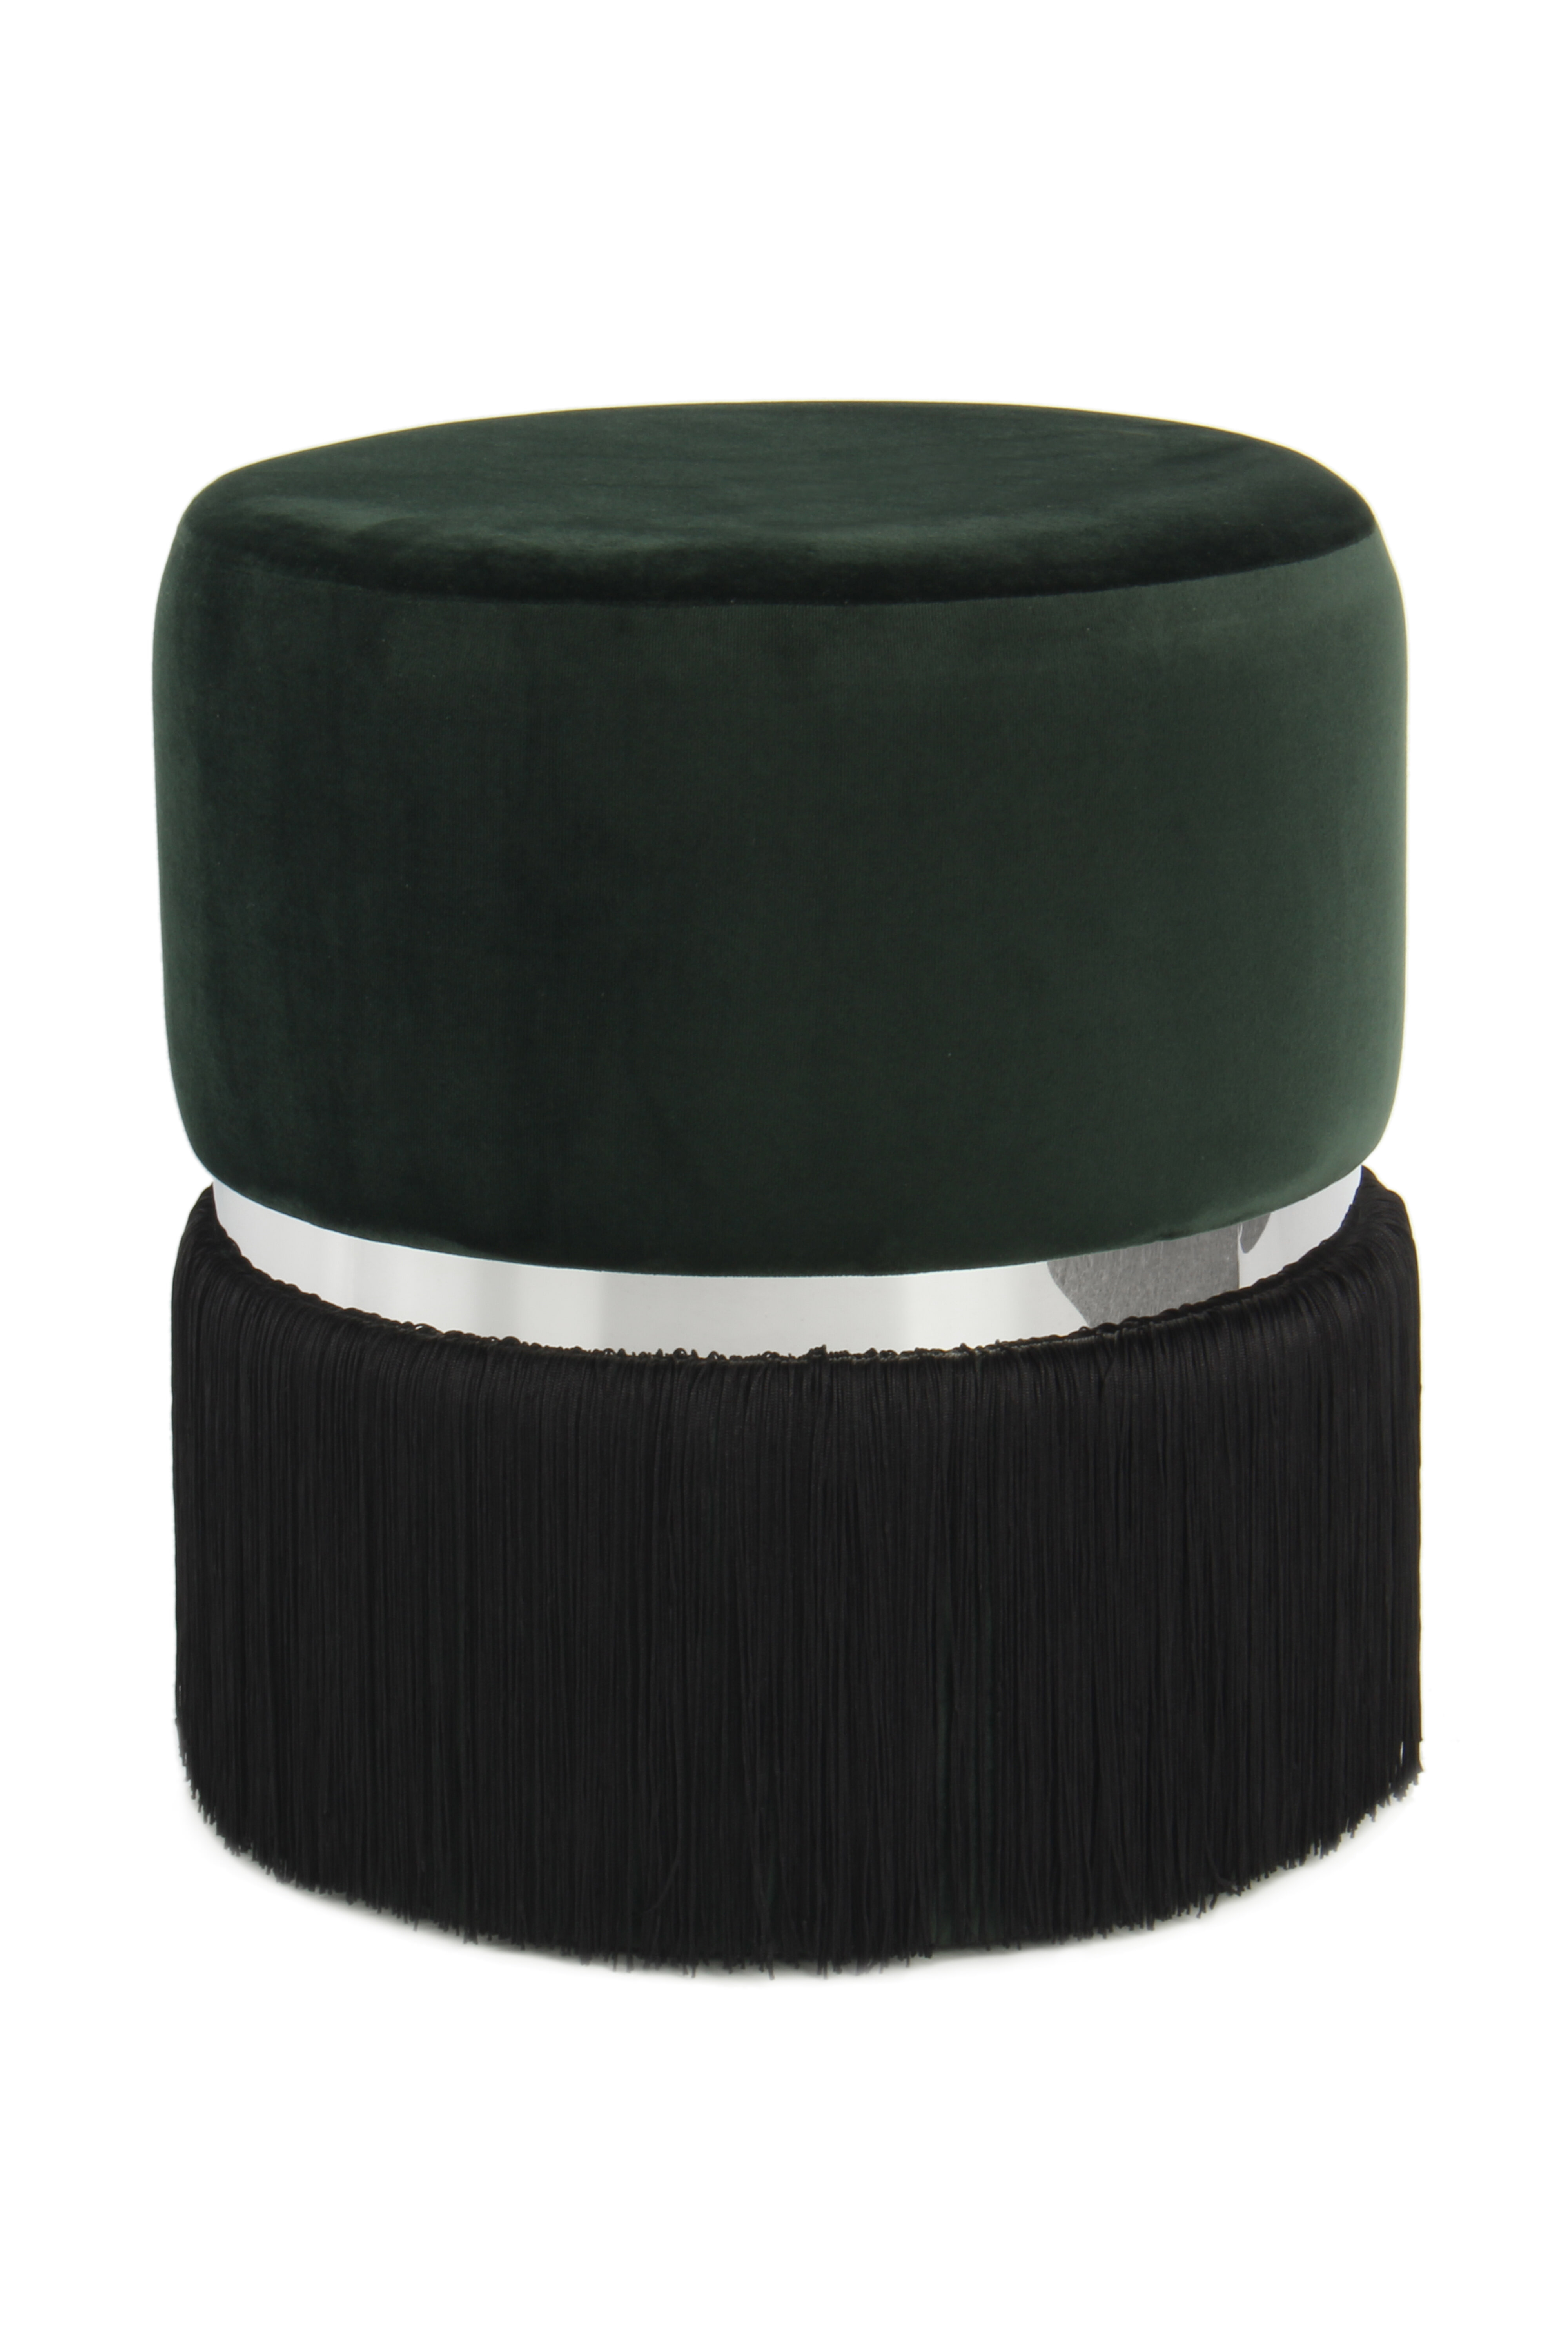 Kayoom Poef 'Rebecca' Velvet met franjes, 41cm, kleur groen - zwart